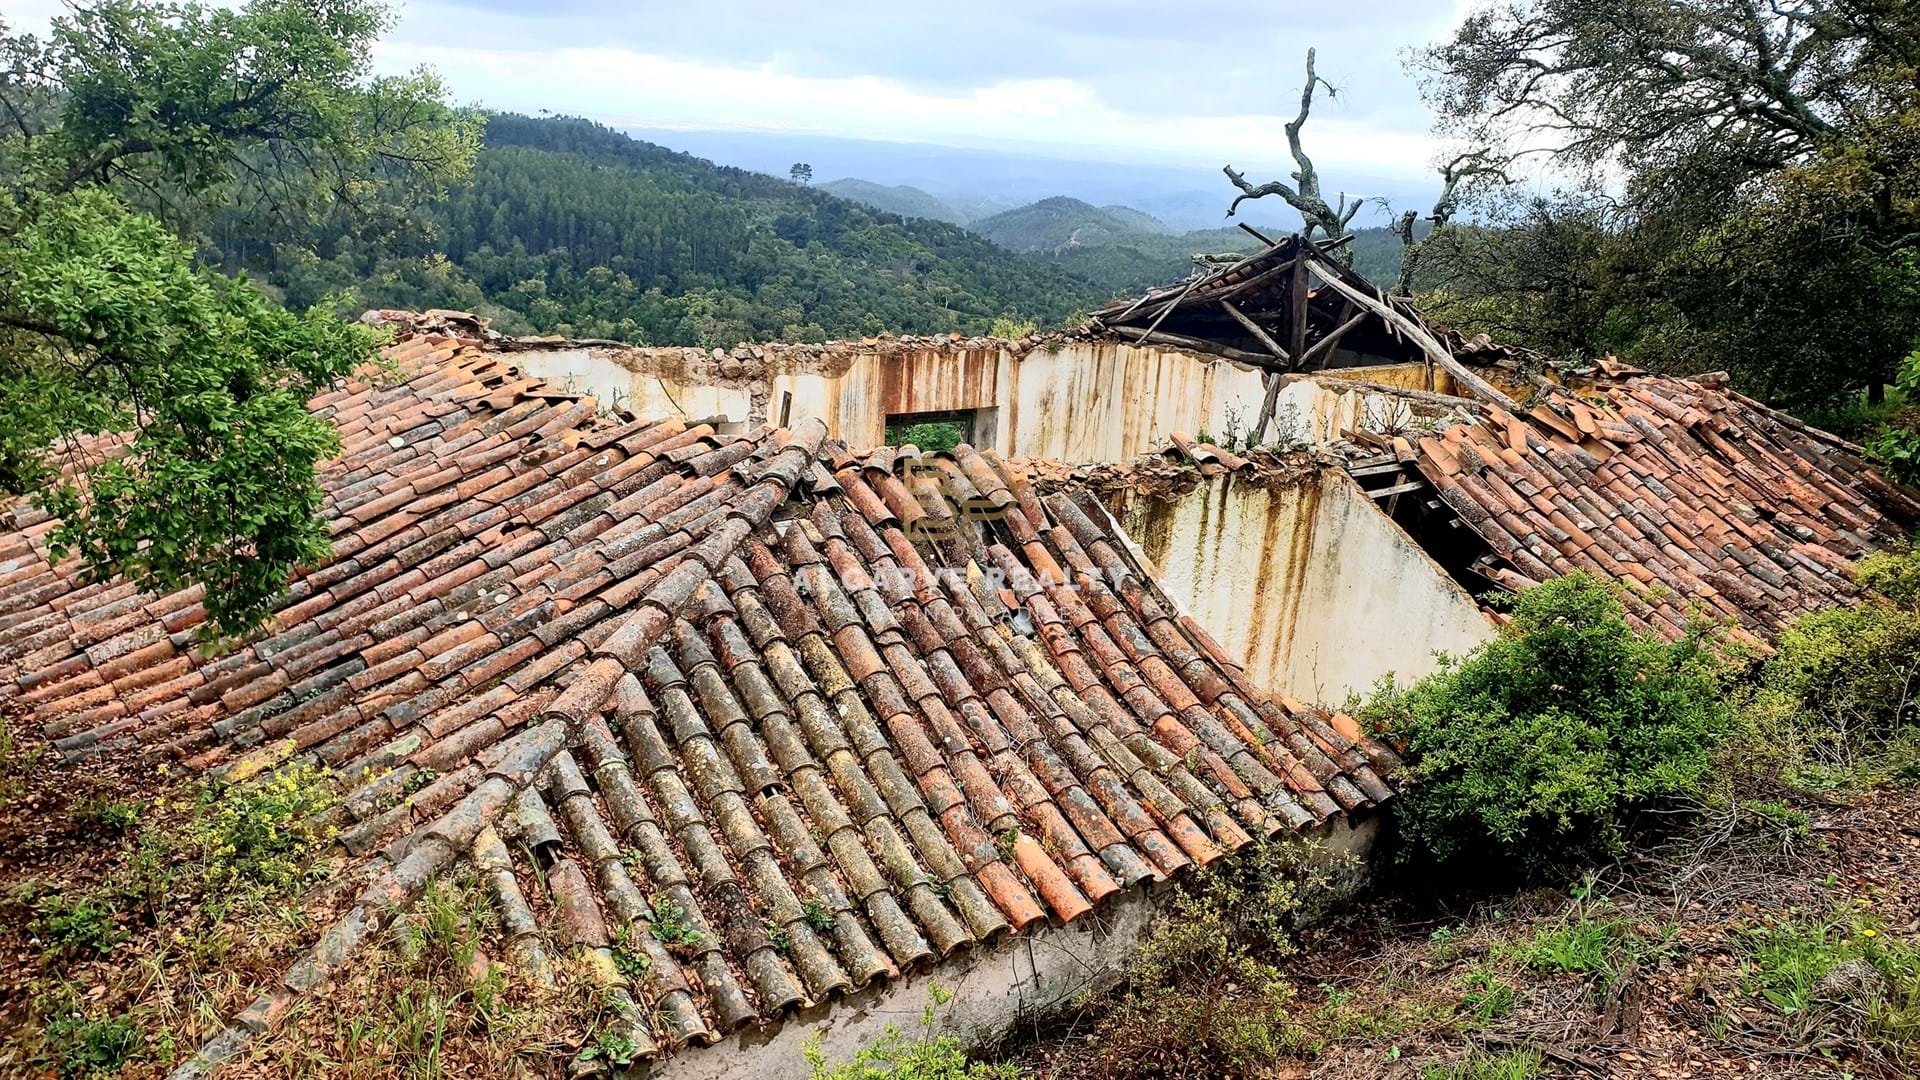 Gralhos - Monchique - VENTE - MONCHIQUE ruine a pour investissement avec terrain rustique avec 1000 m2 - vue magnifique